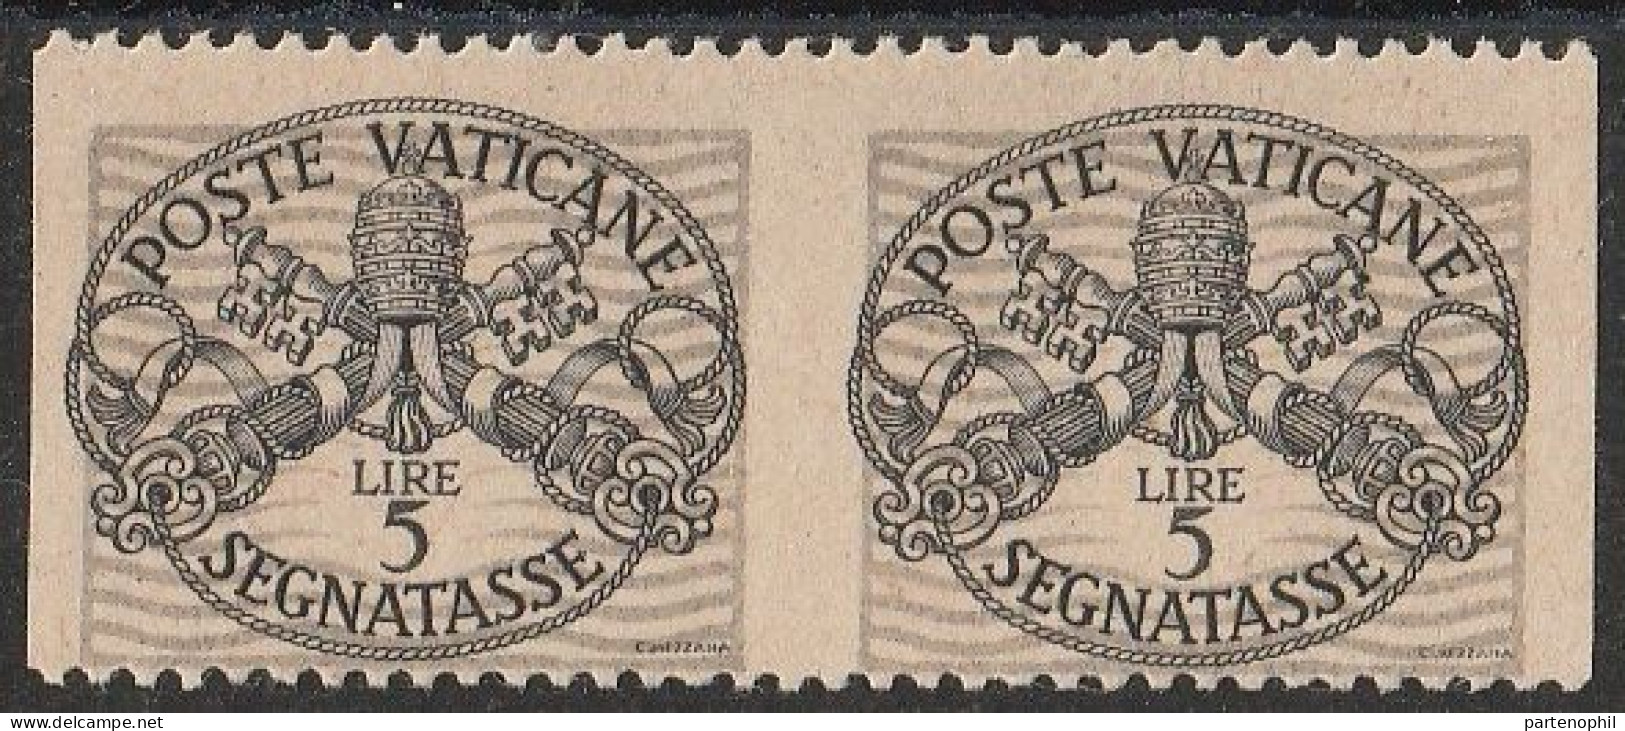 Lotto 424 Vaticano Varietà 1946 - Segnatasse Coppia Verticale Del L. 5 Non Dentellata N. 12c. MH - Abarten